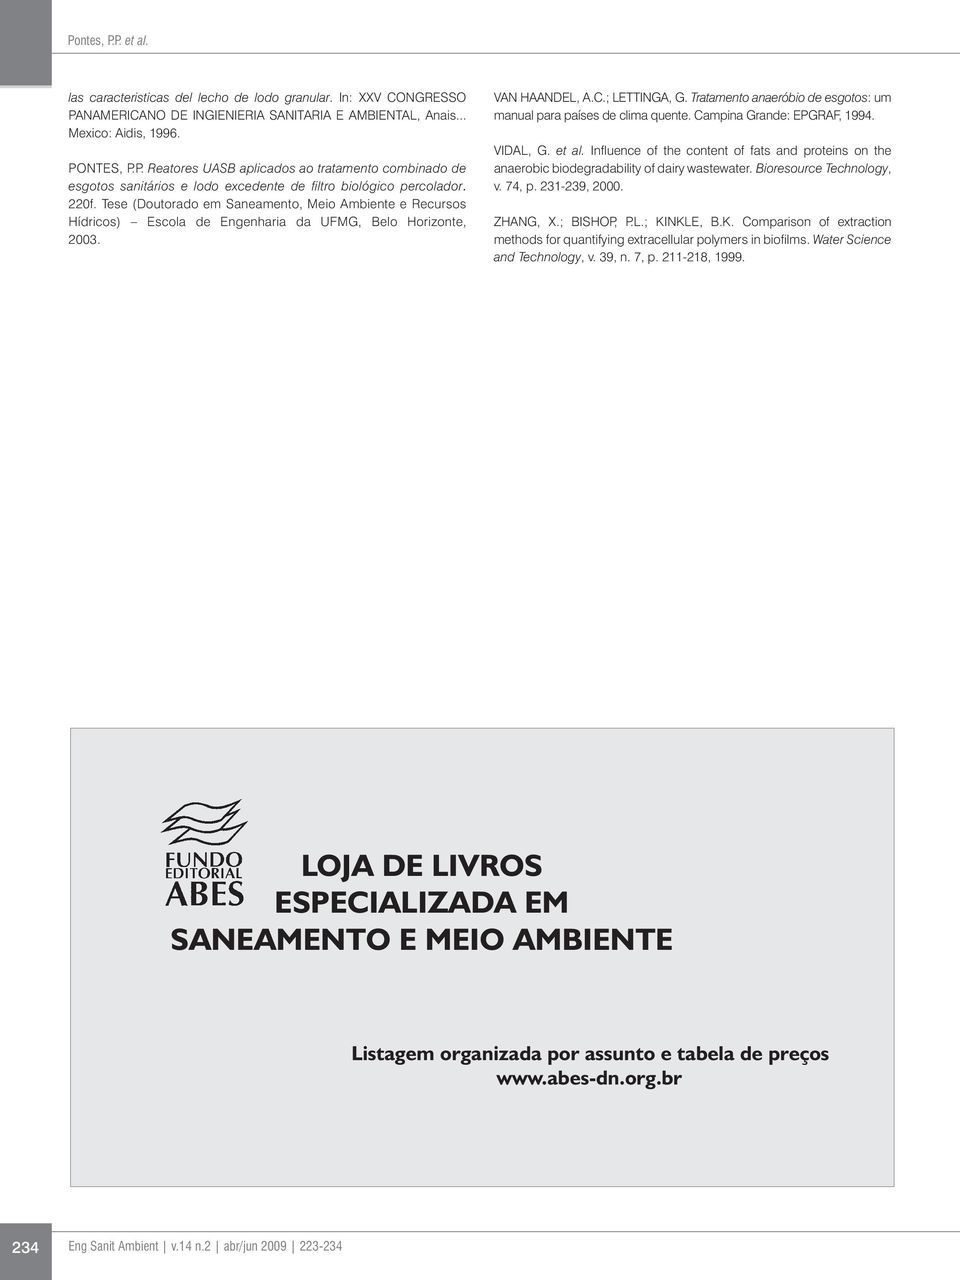 Tratamento anaeróbio de esgotos: um manual para países de clima quente. Campina Grande: EPGRAF, 1994. VIDAL, G. et al.